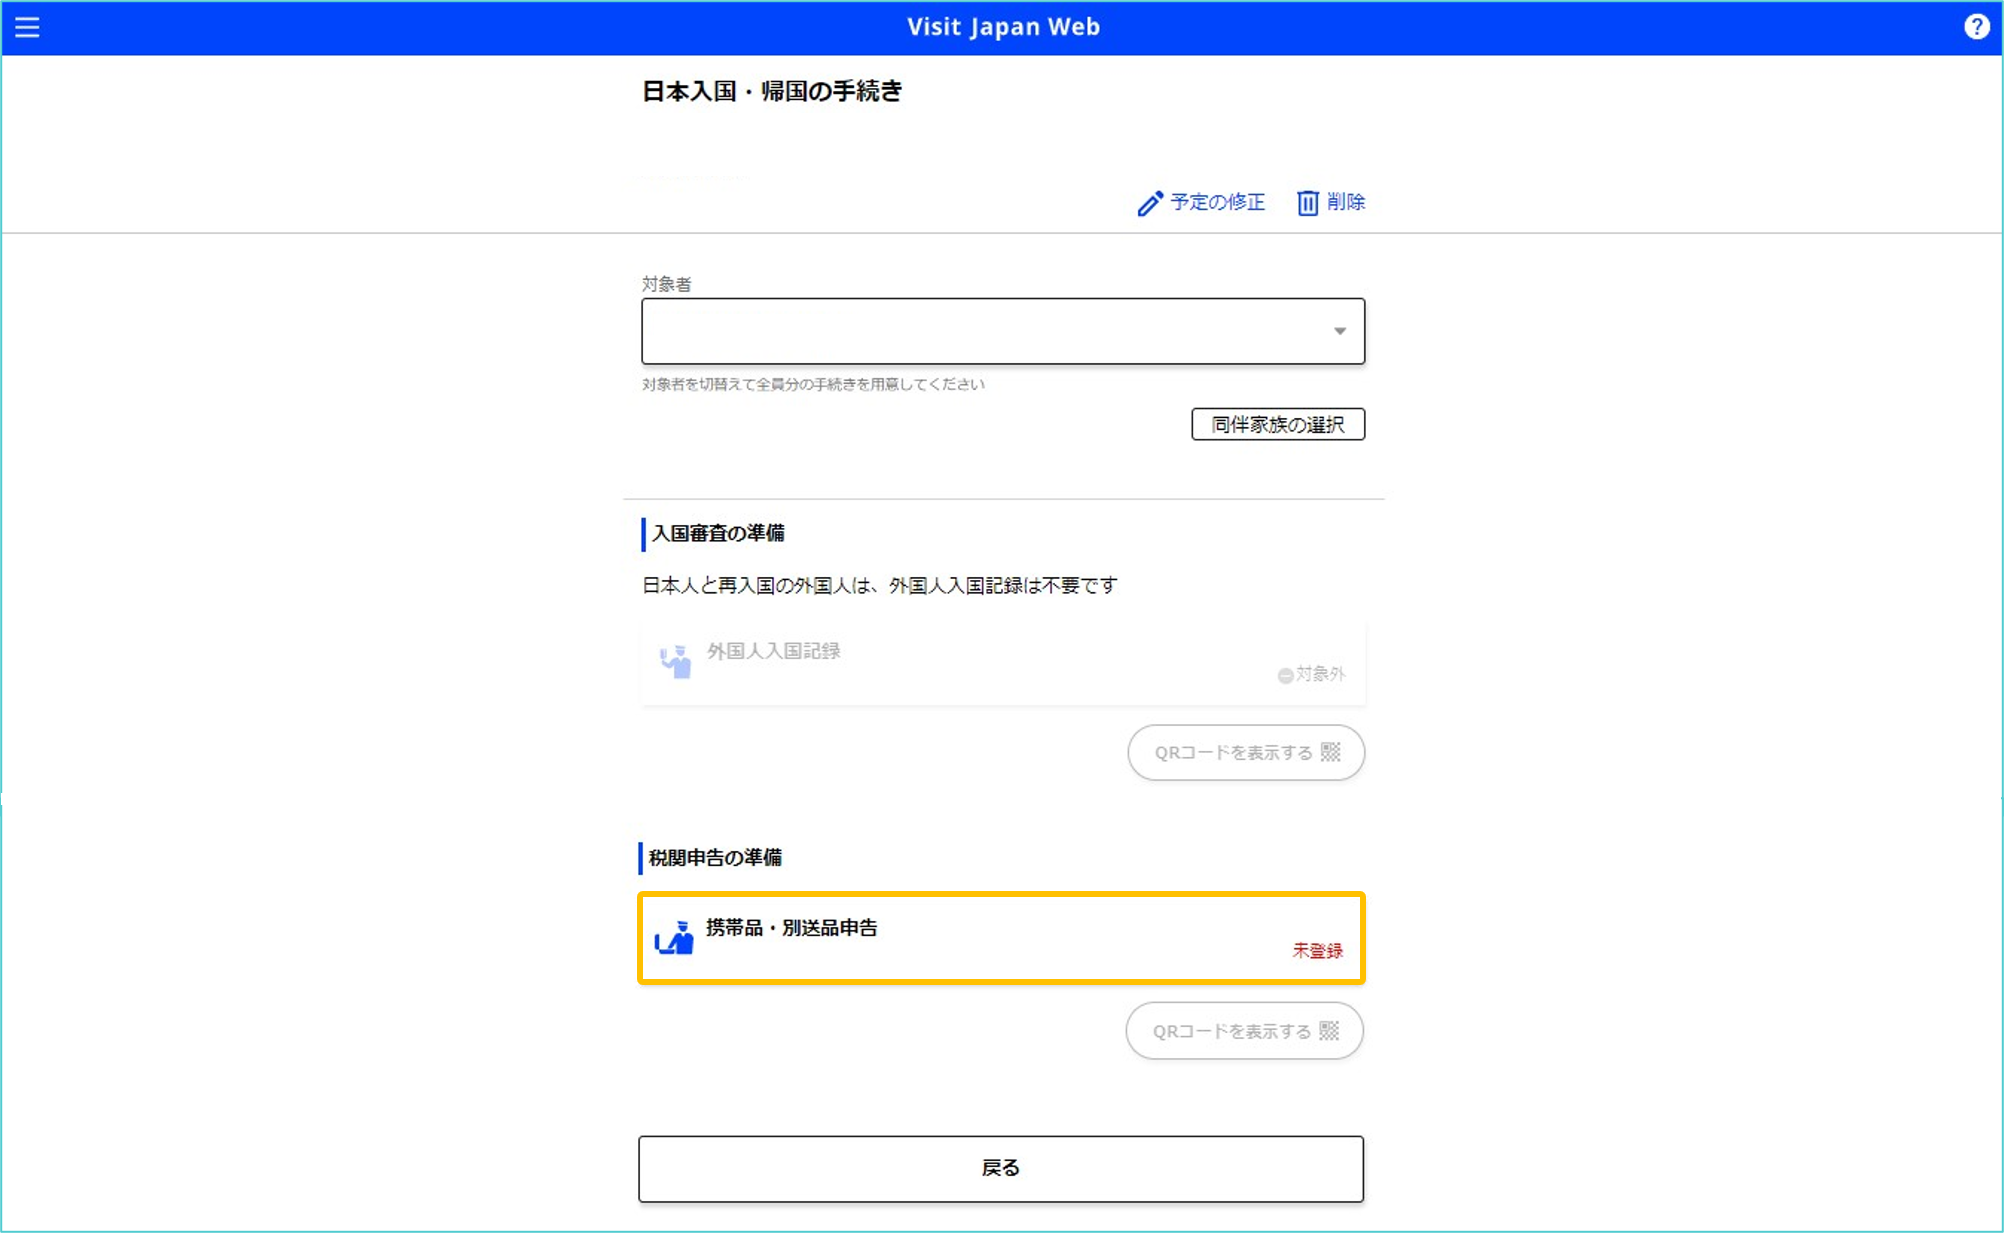 visit japan web 登録方法